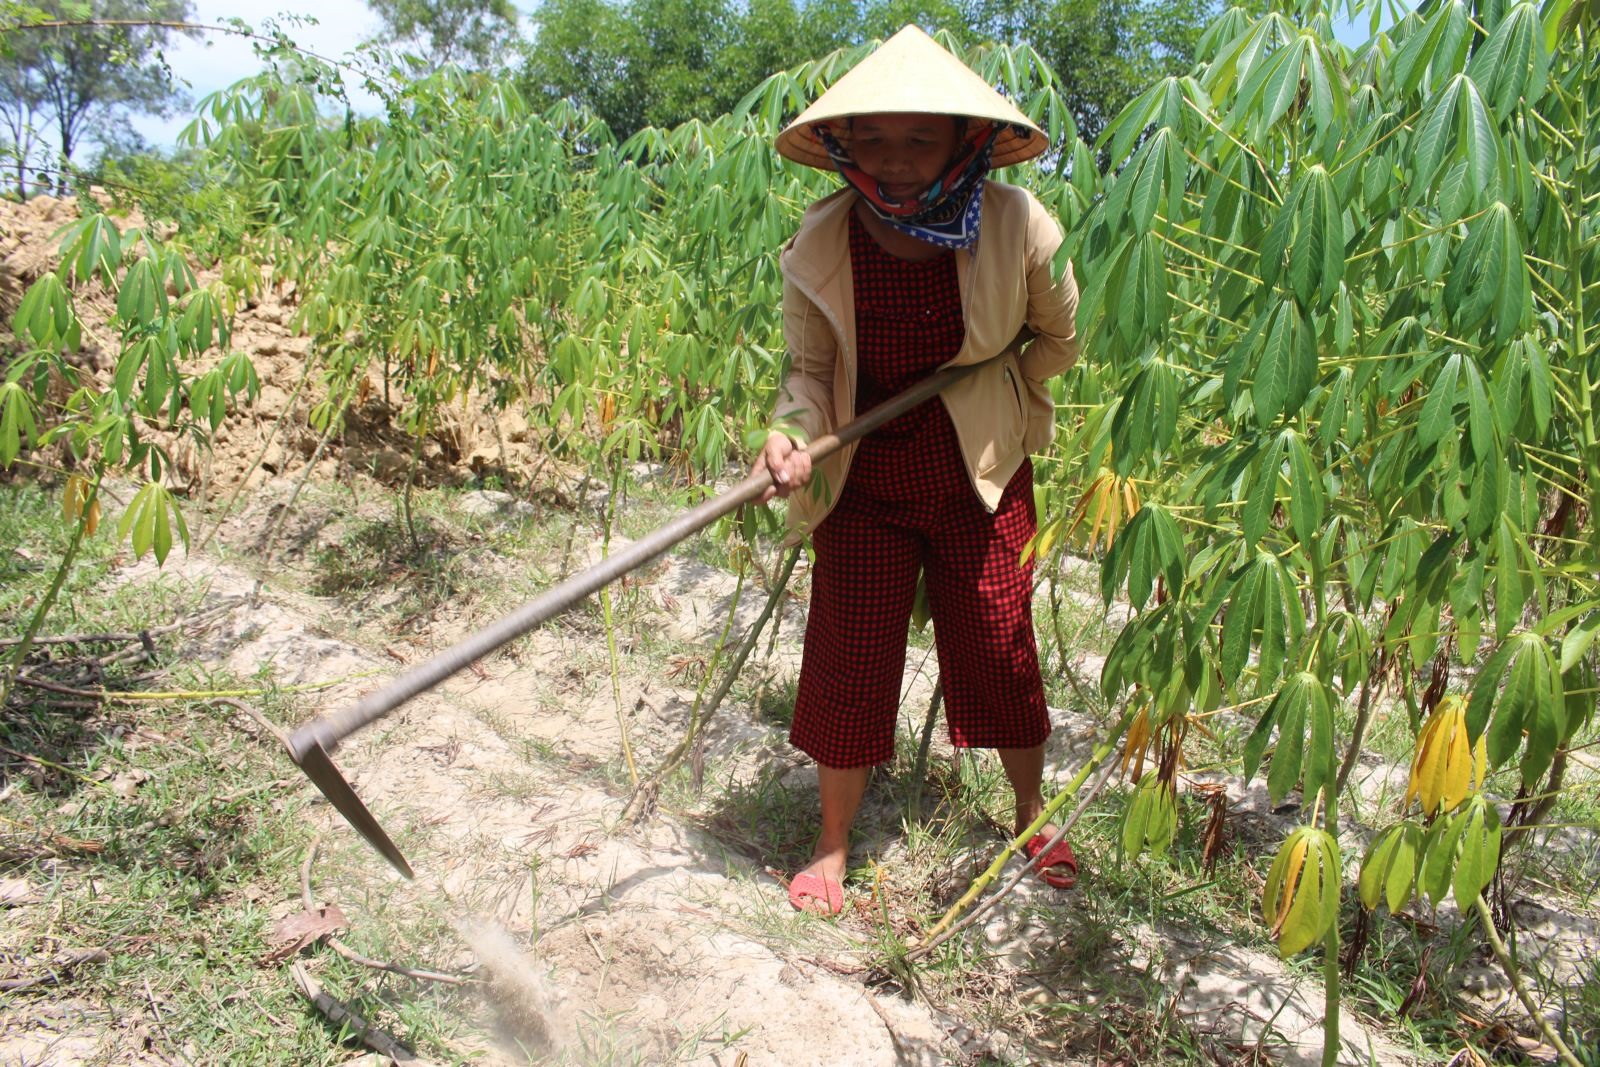 Với sự cần cù, chăm chỉ, gia đình chị Yên có thu nhập hơn 150 triệu đồng/năm từ việc trồng trọt, chăn nuôi